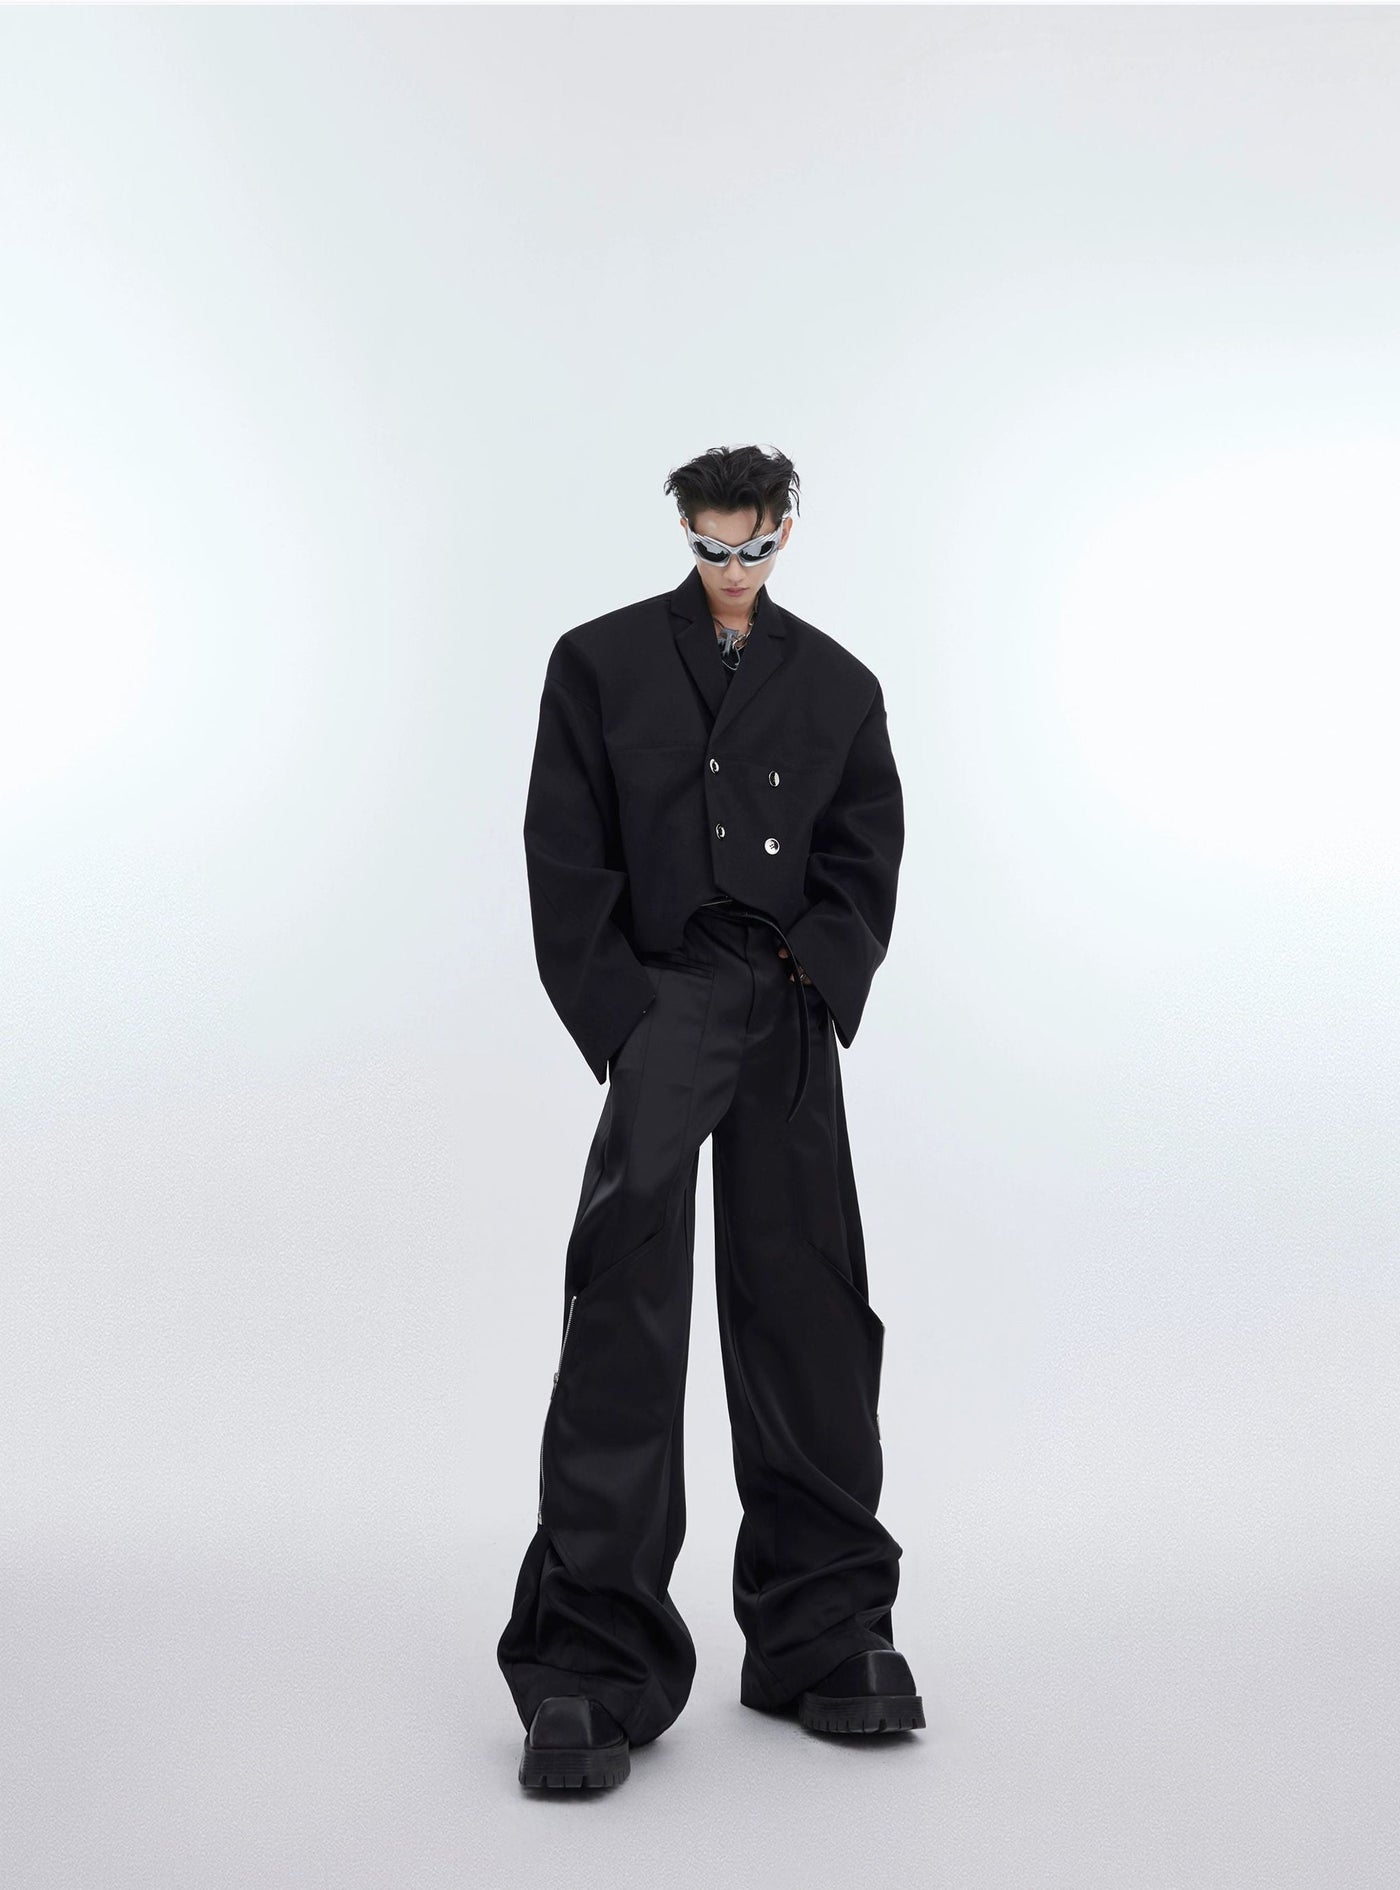 Loose Fit Lapel Blazer Korean Street Fashion Blazer By Argue Culture Shop Online at OH Vault